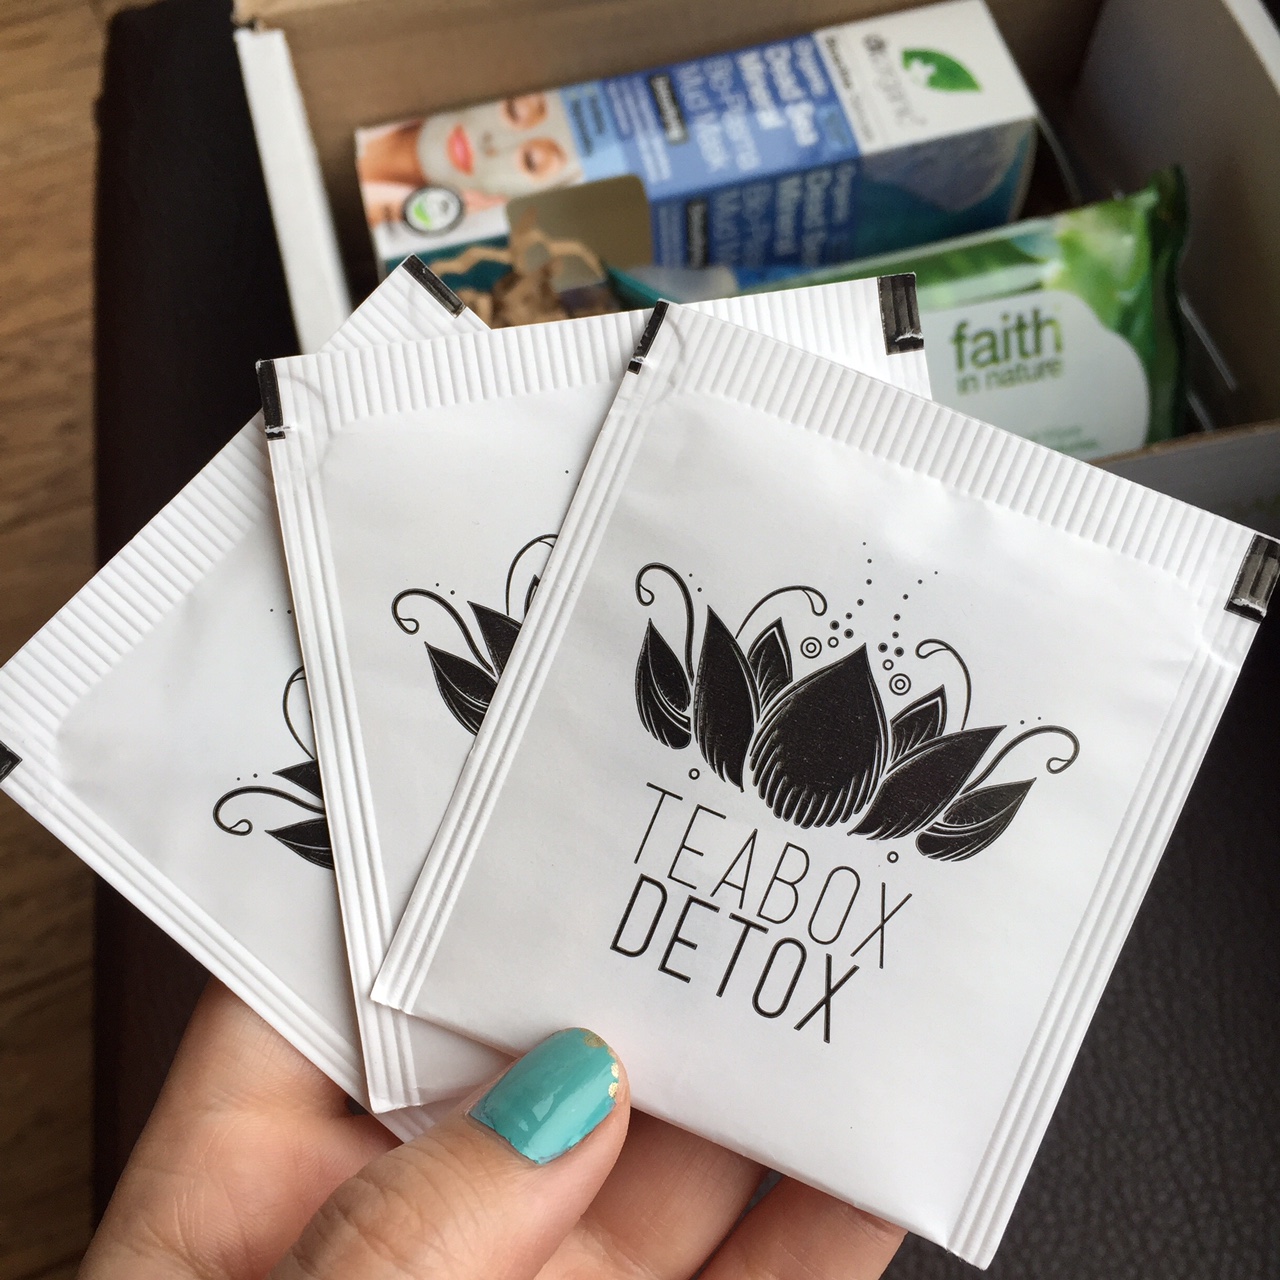 Teabox Detox